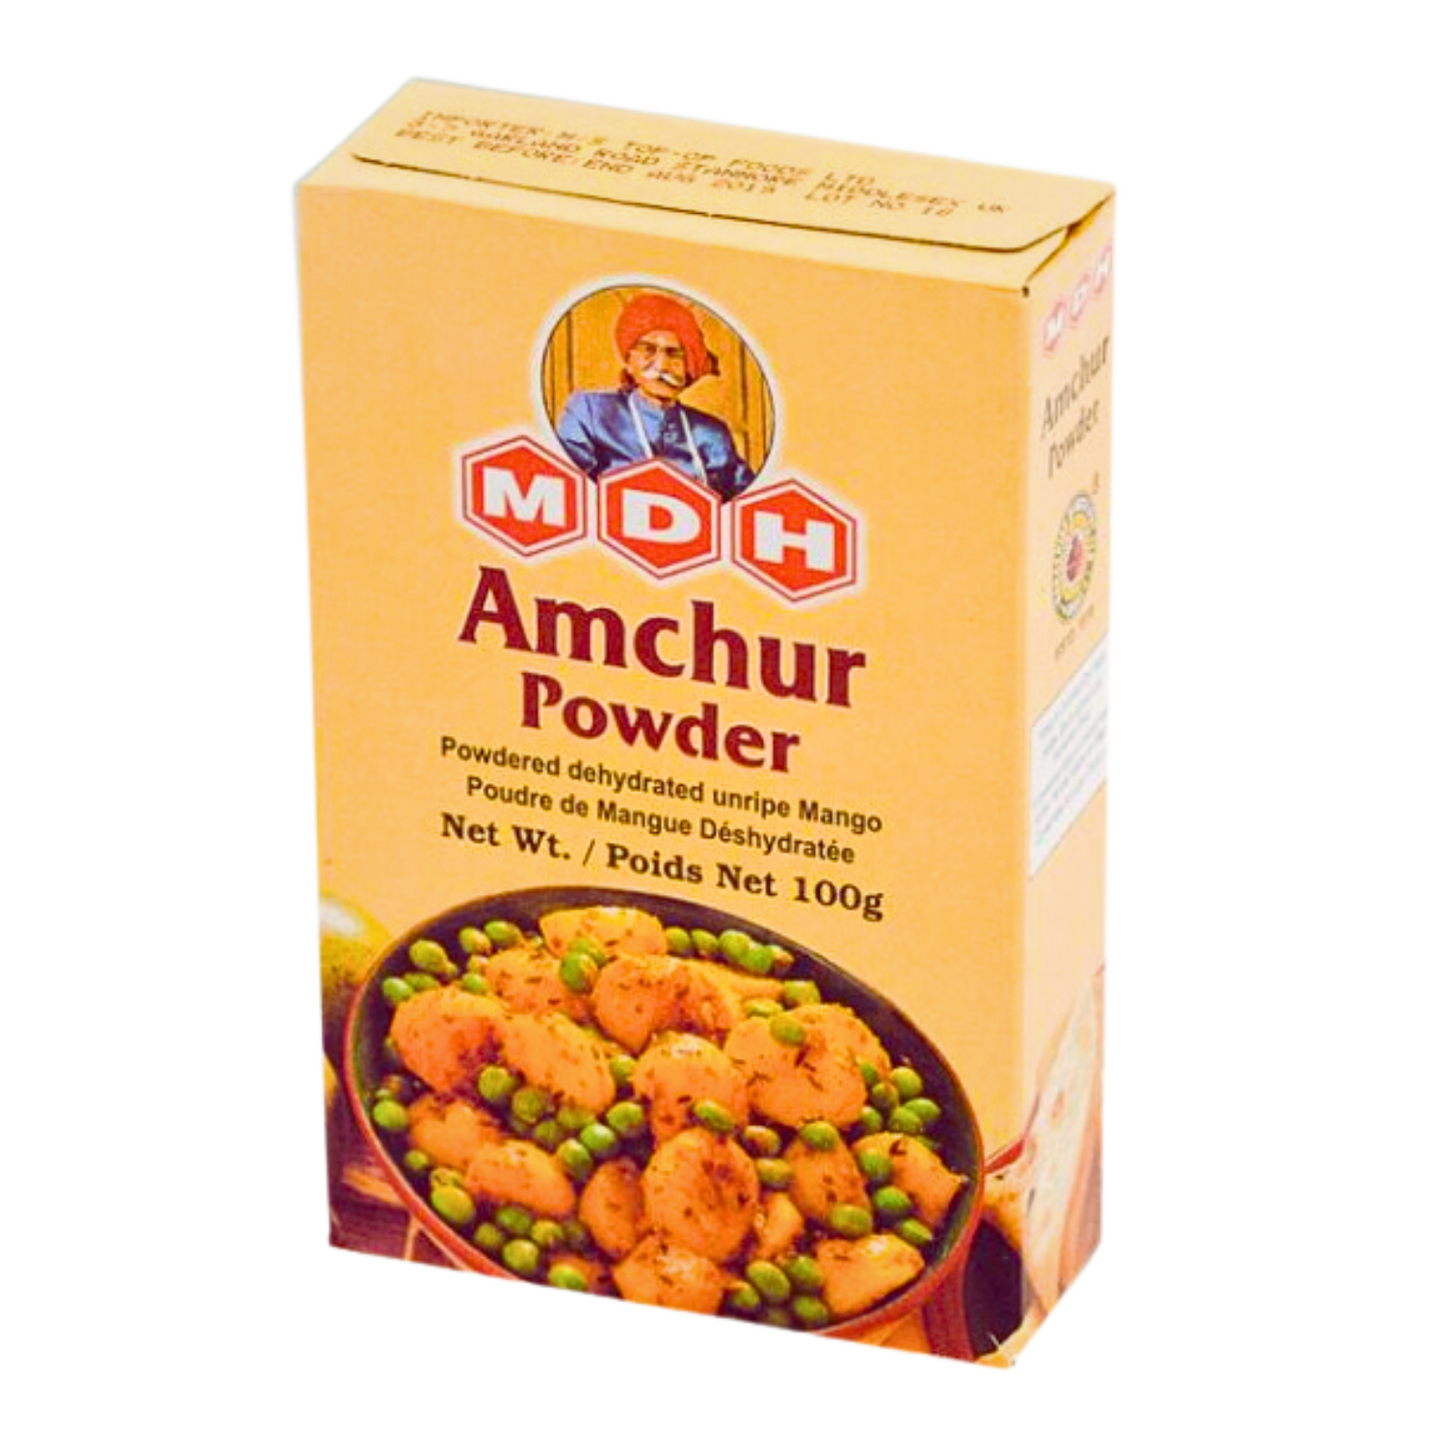 MDH Amchur (Mango) Powder